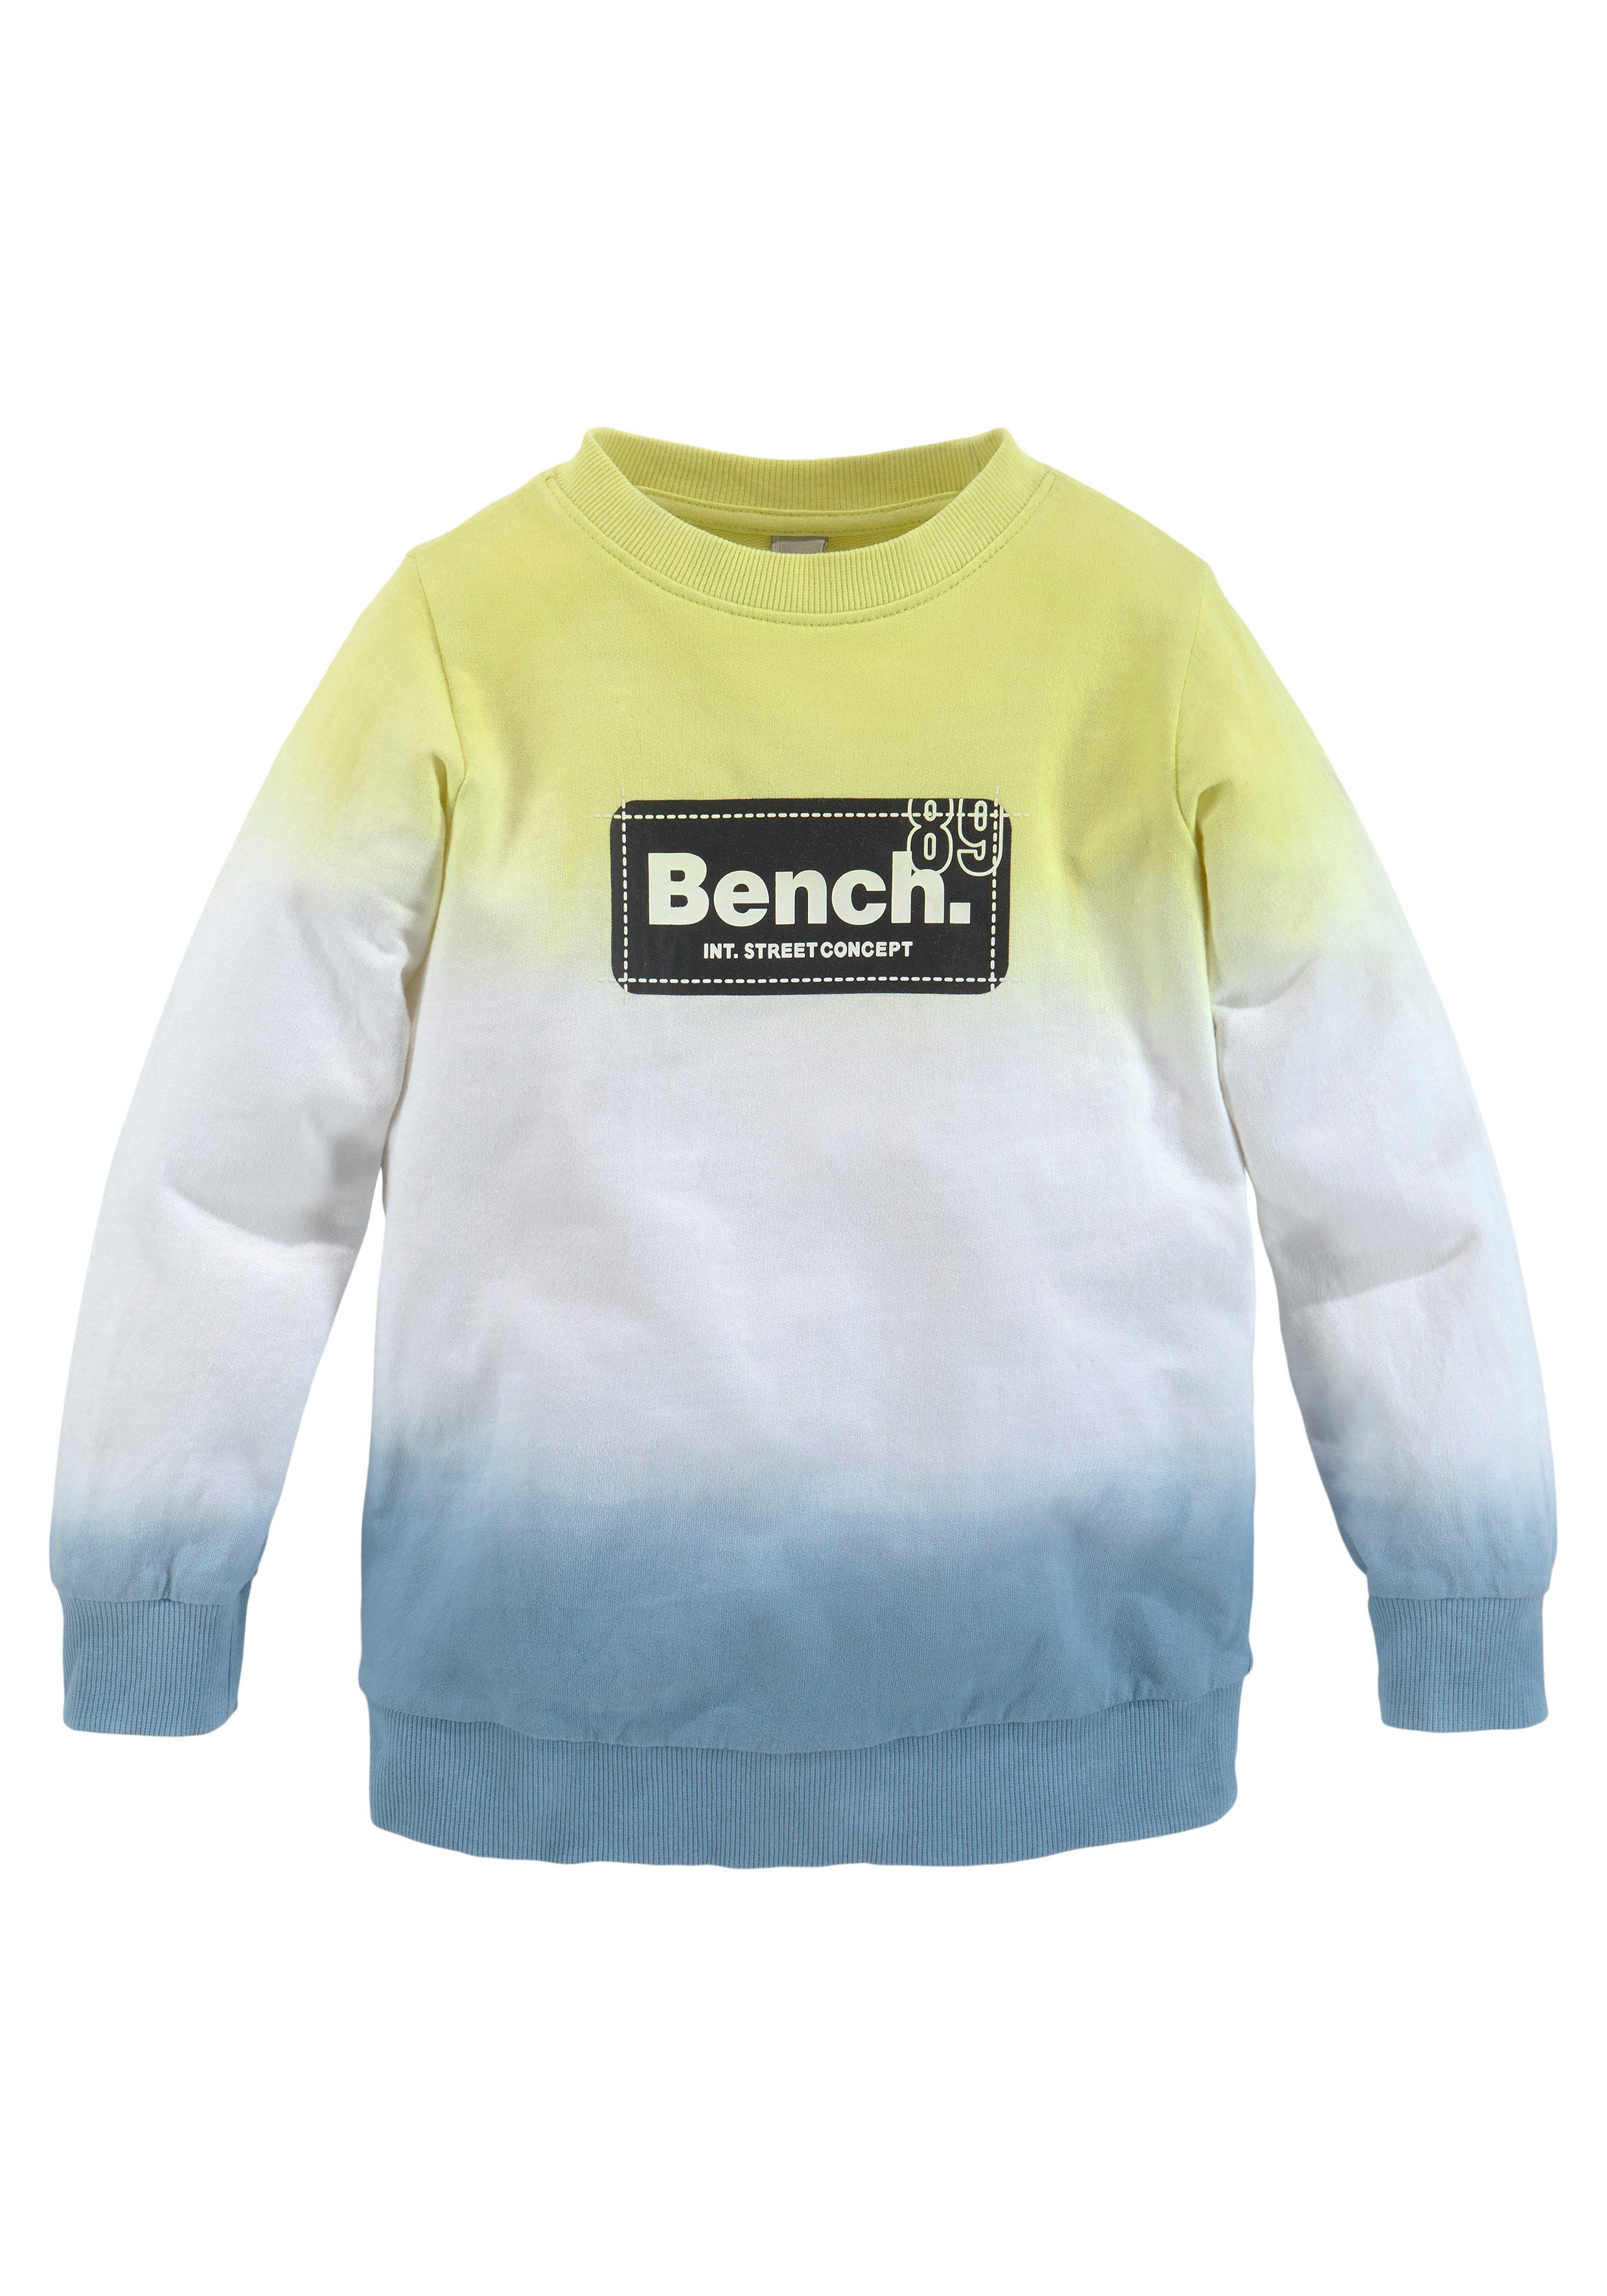 Bench. Sweatshirt mit Farbverlauf, In coolem Farbverlauf und mit Druck vorn